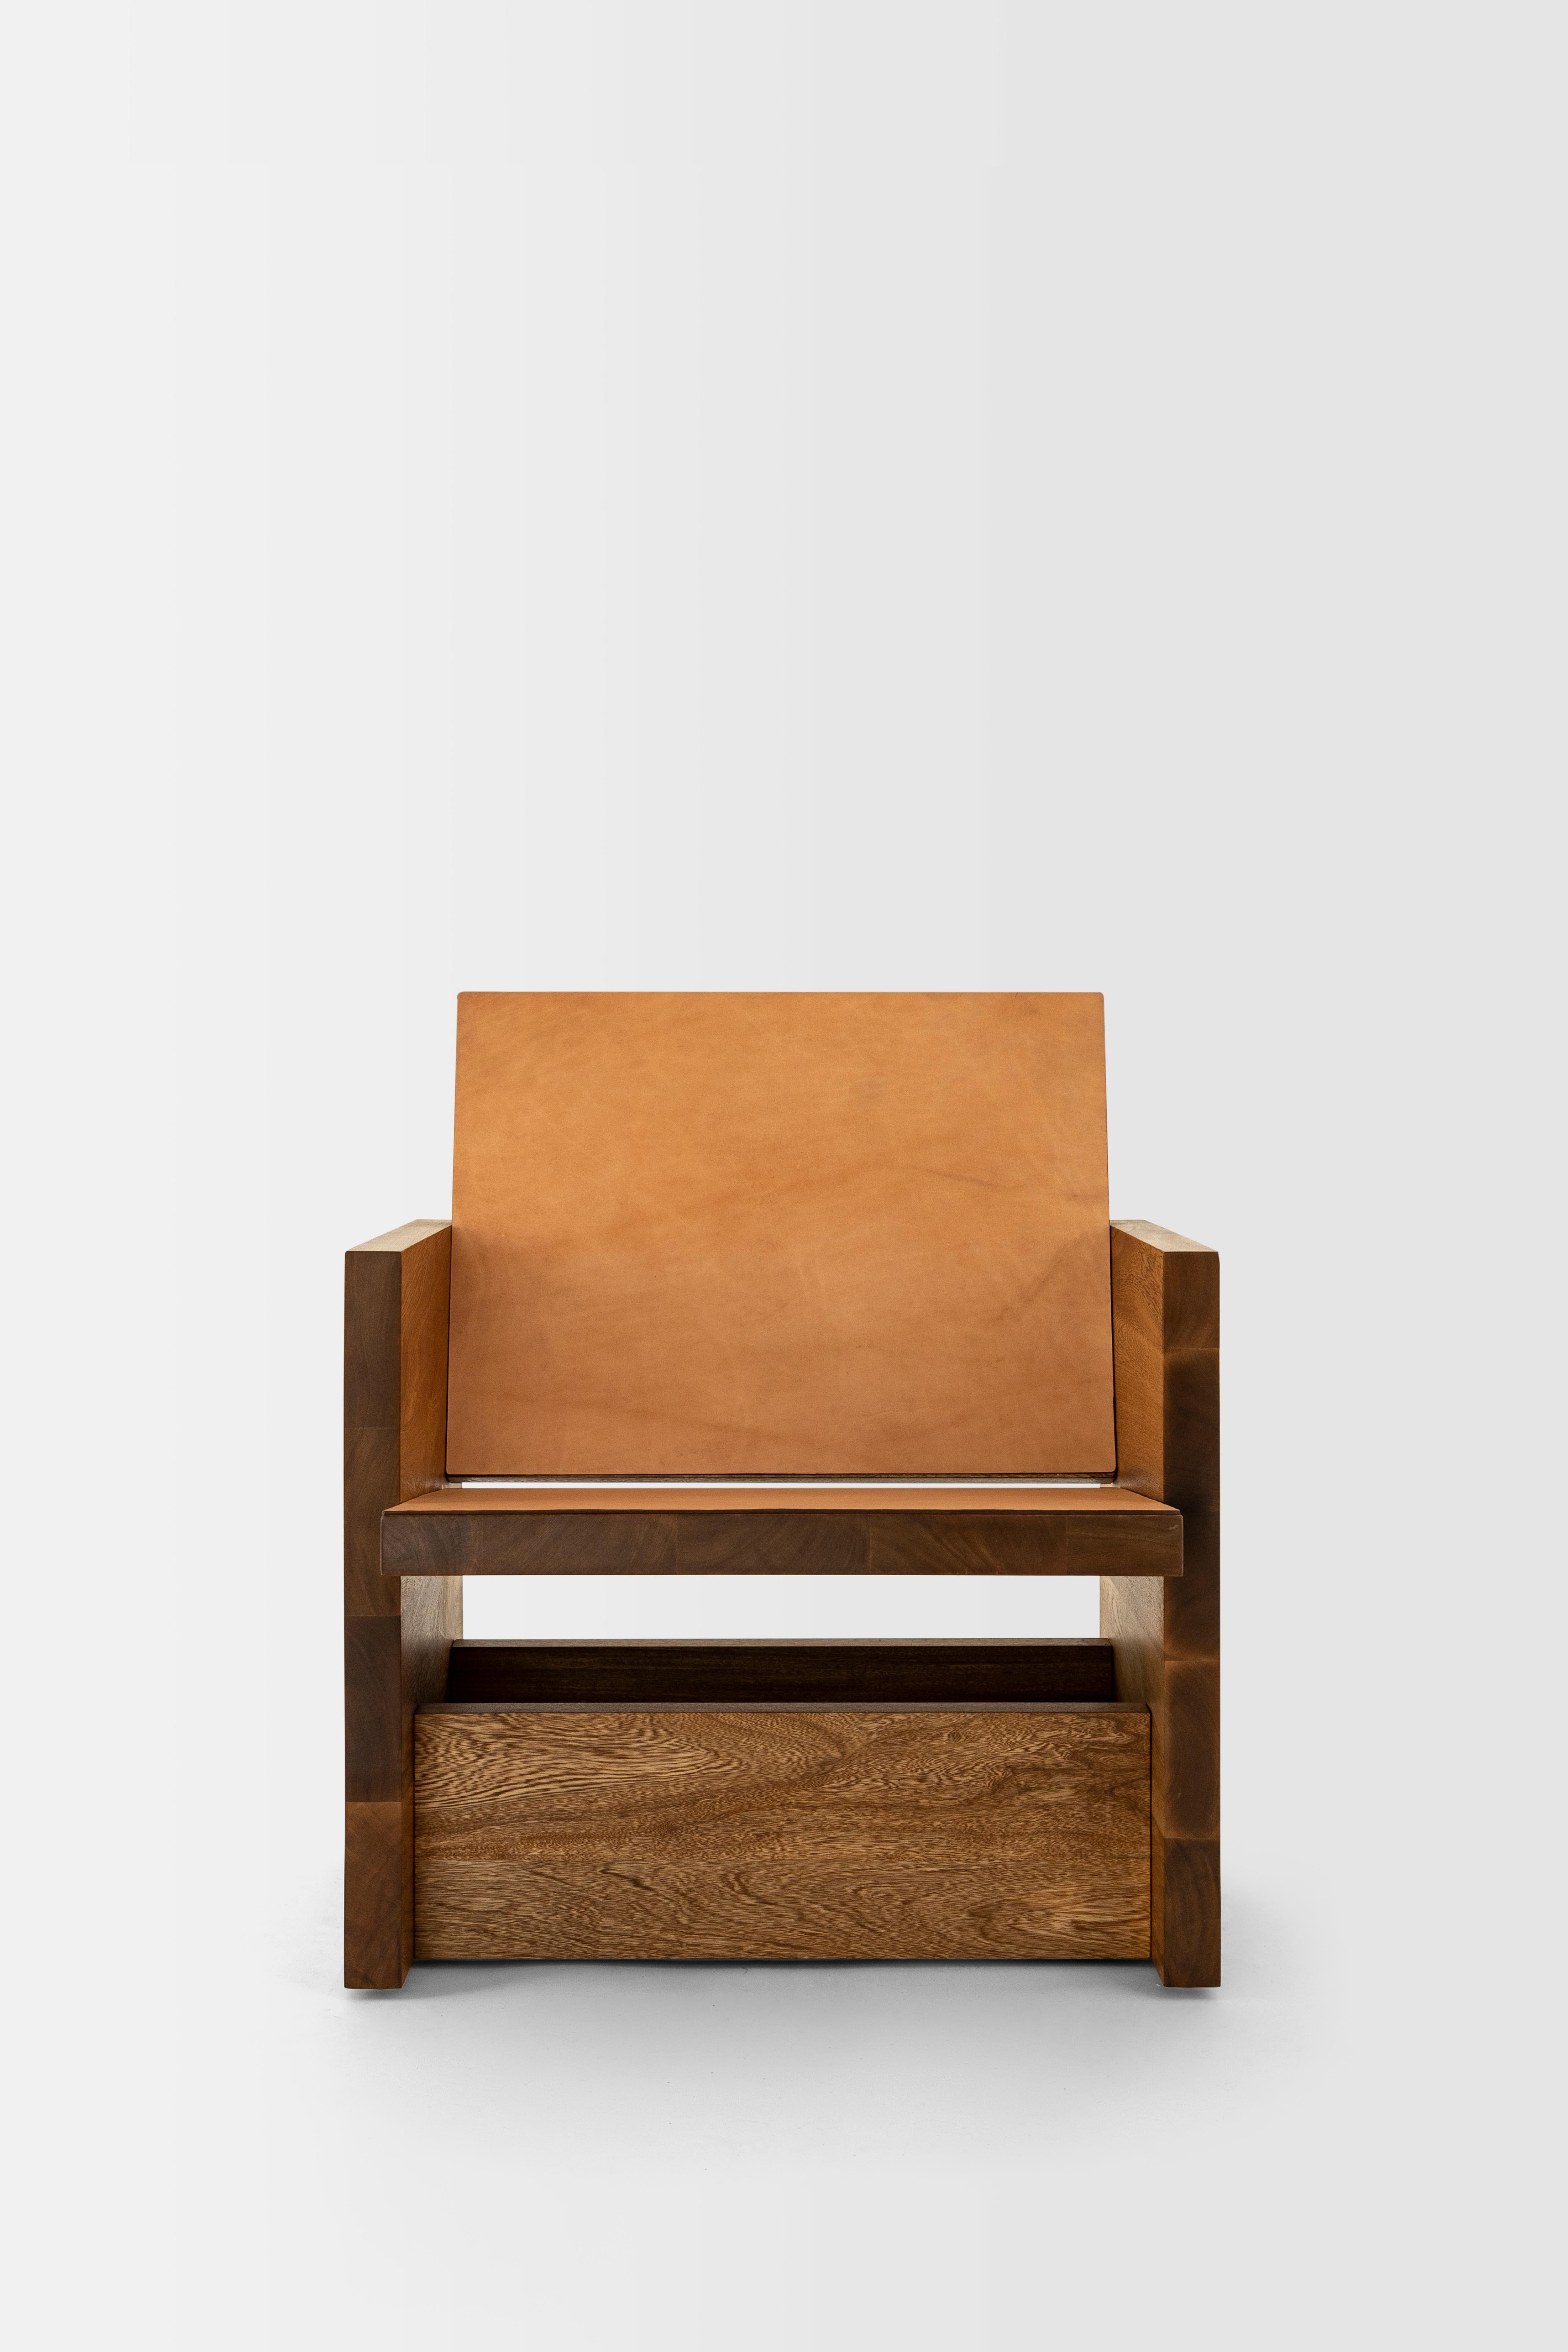 Minimalist Clavijero Lounge Chair, Rosa Morada Wood For Sale